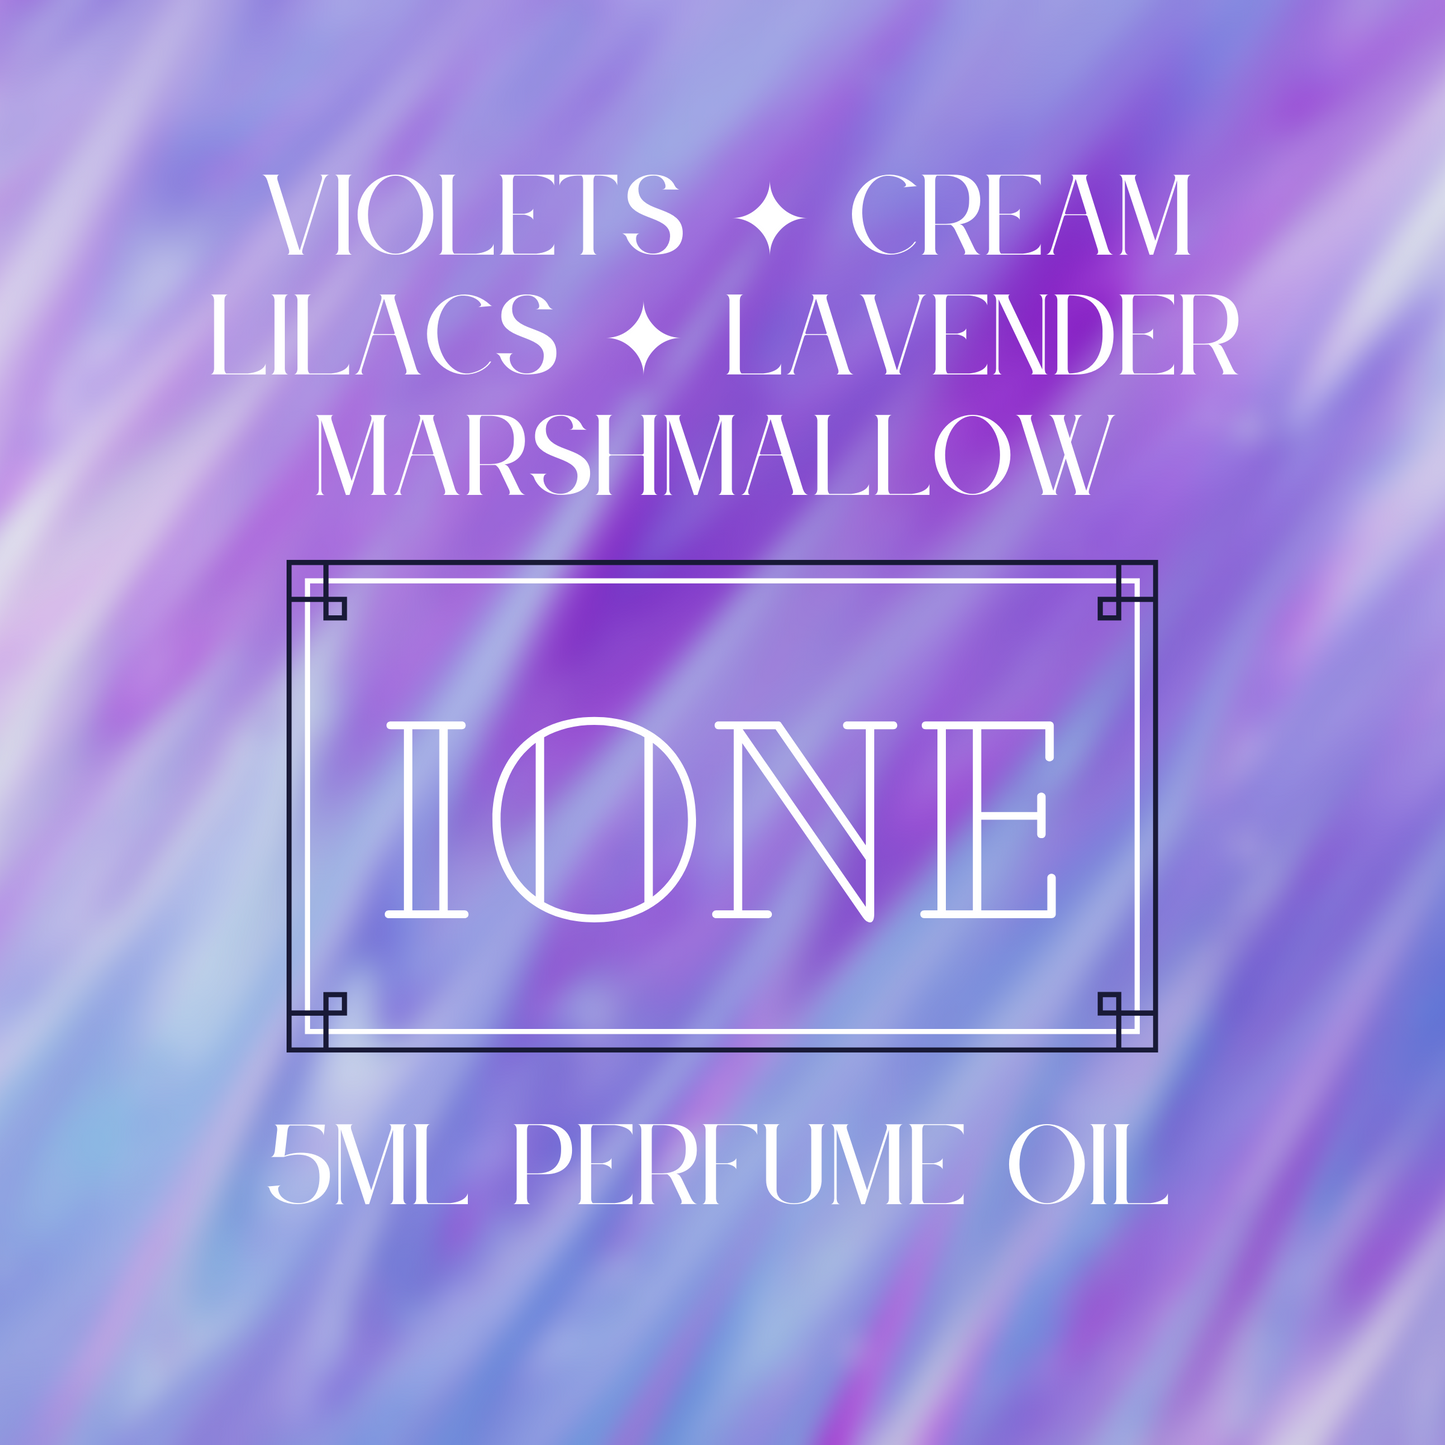 IONE perfume oil